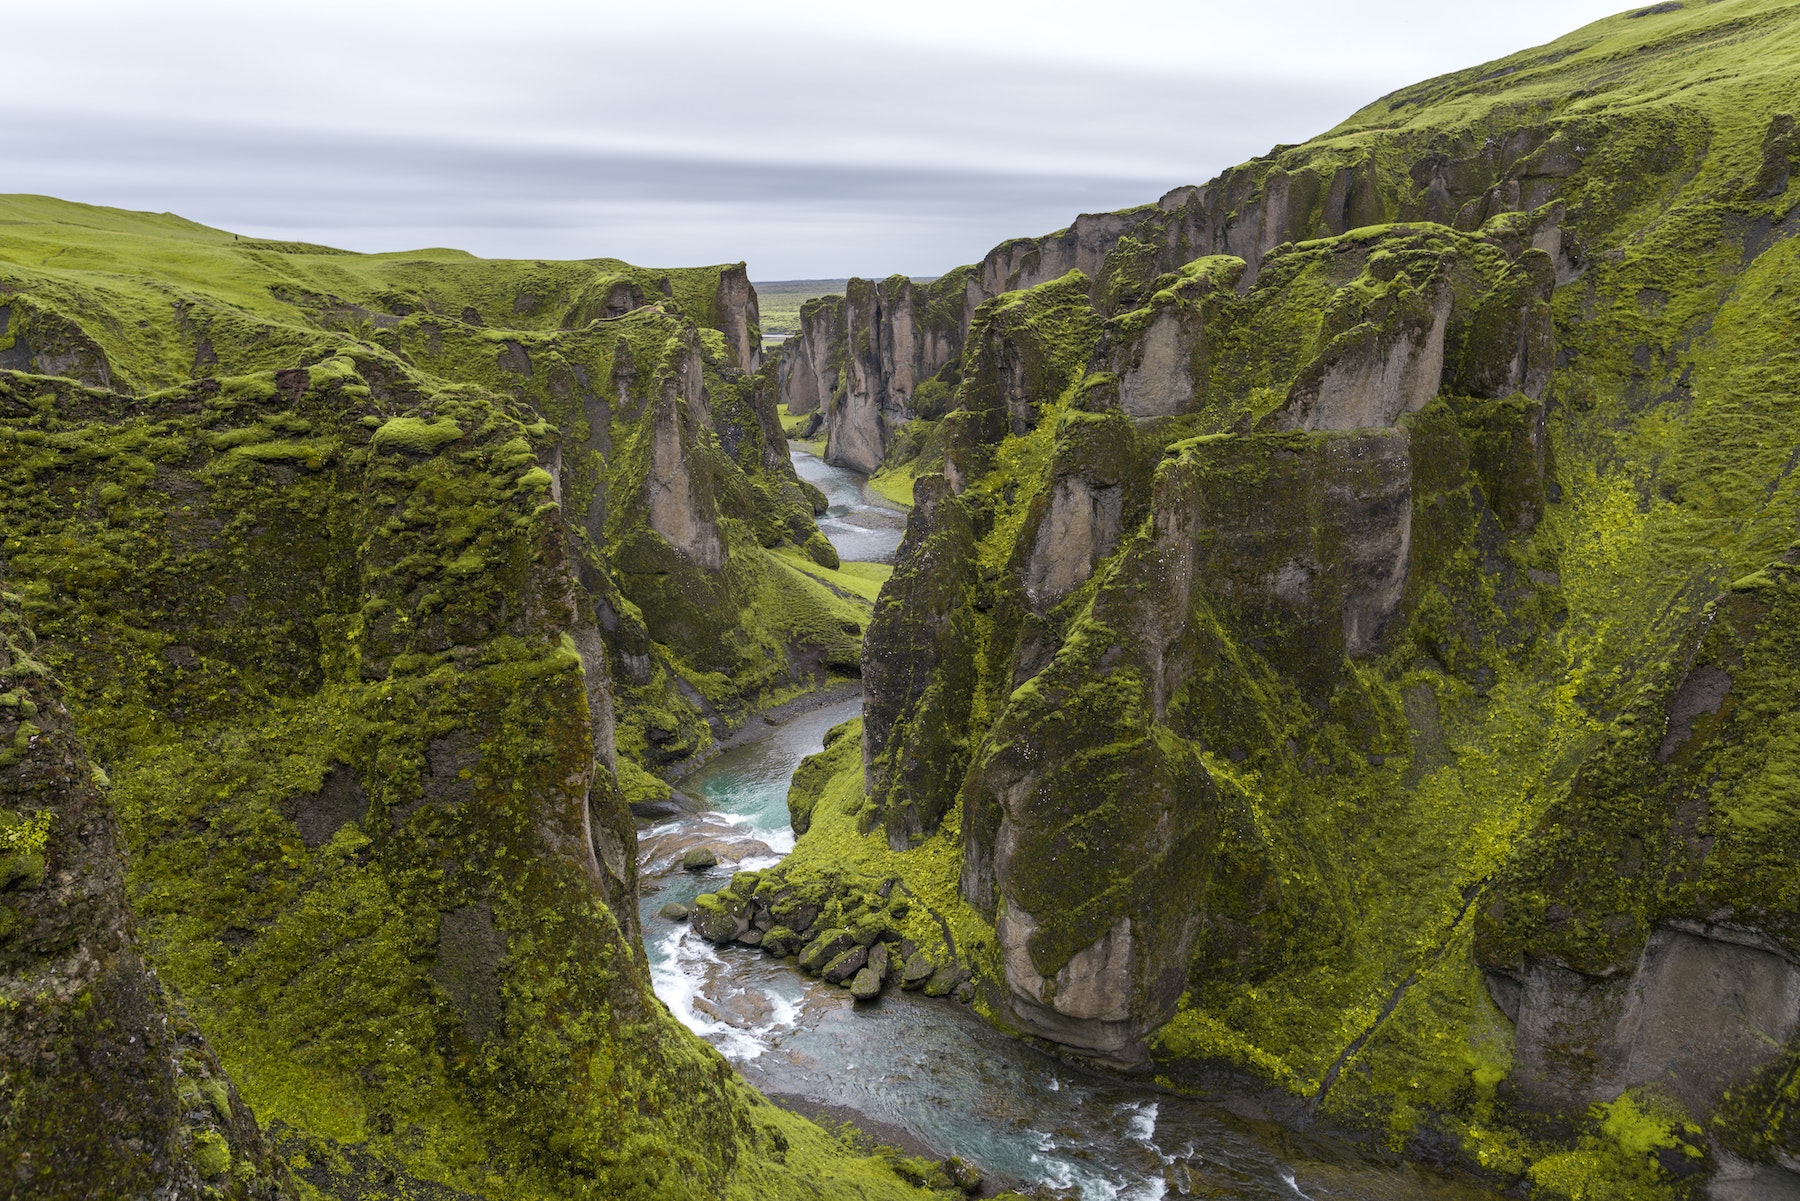 Le canyon de Fjaðrárgljúfur en Islande. © Serey Morm, Unsplash